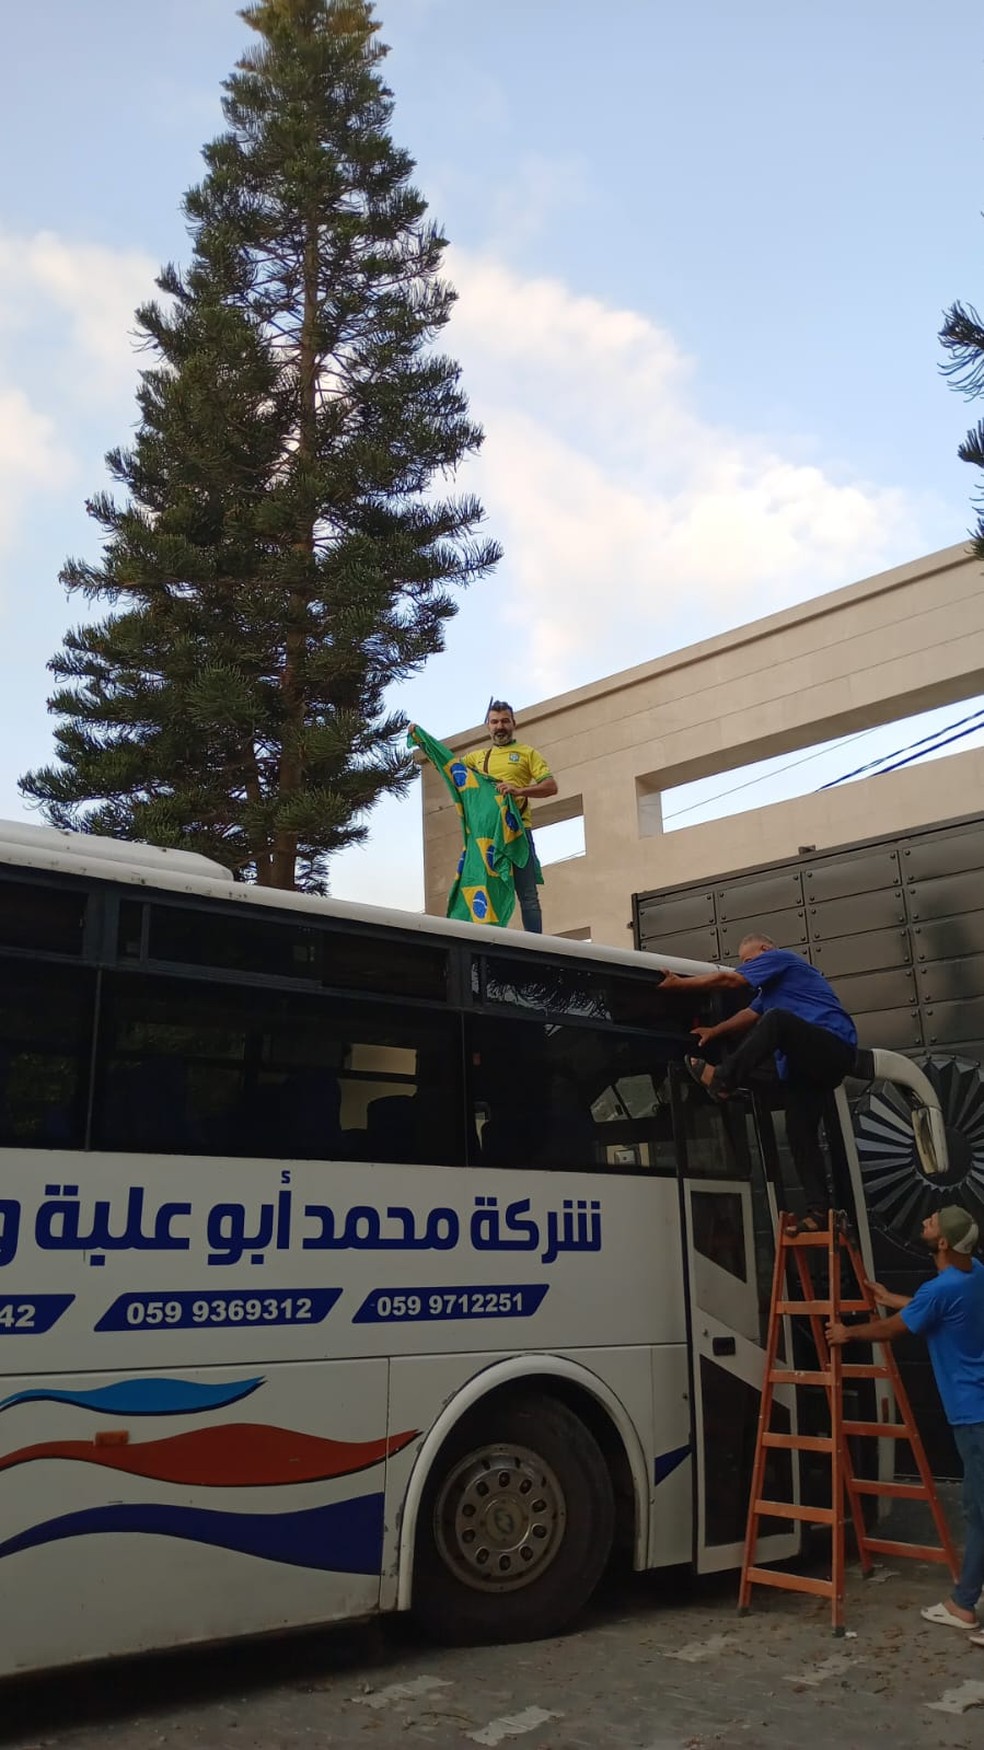 Brasileiros começam a embarcar em ônibus para deixar norte de Gaza — Foto: Arquivo pessoal